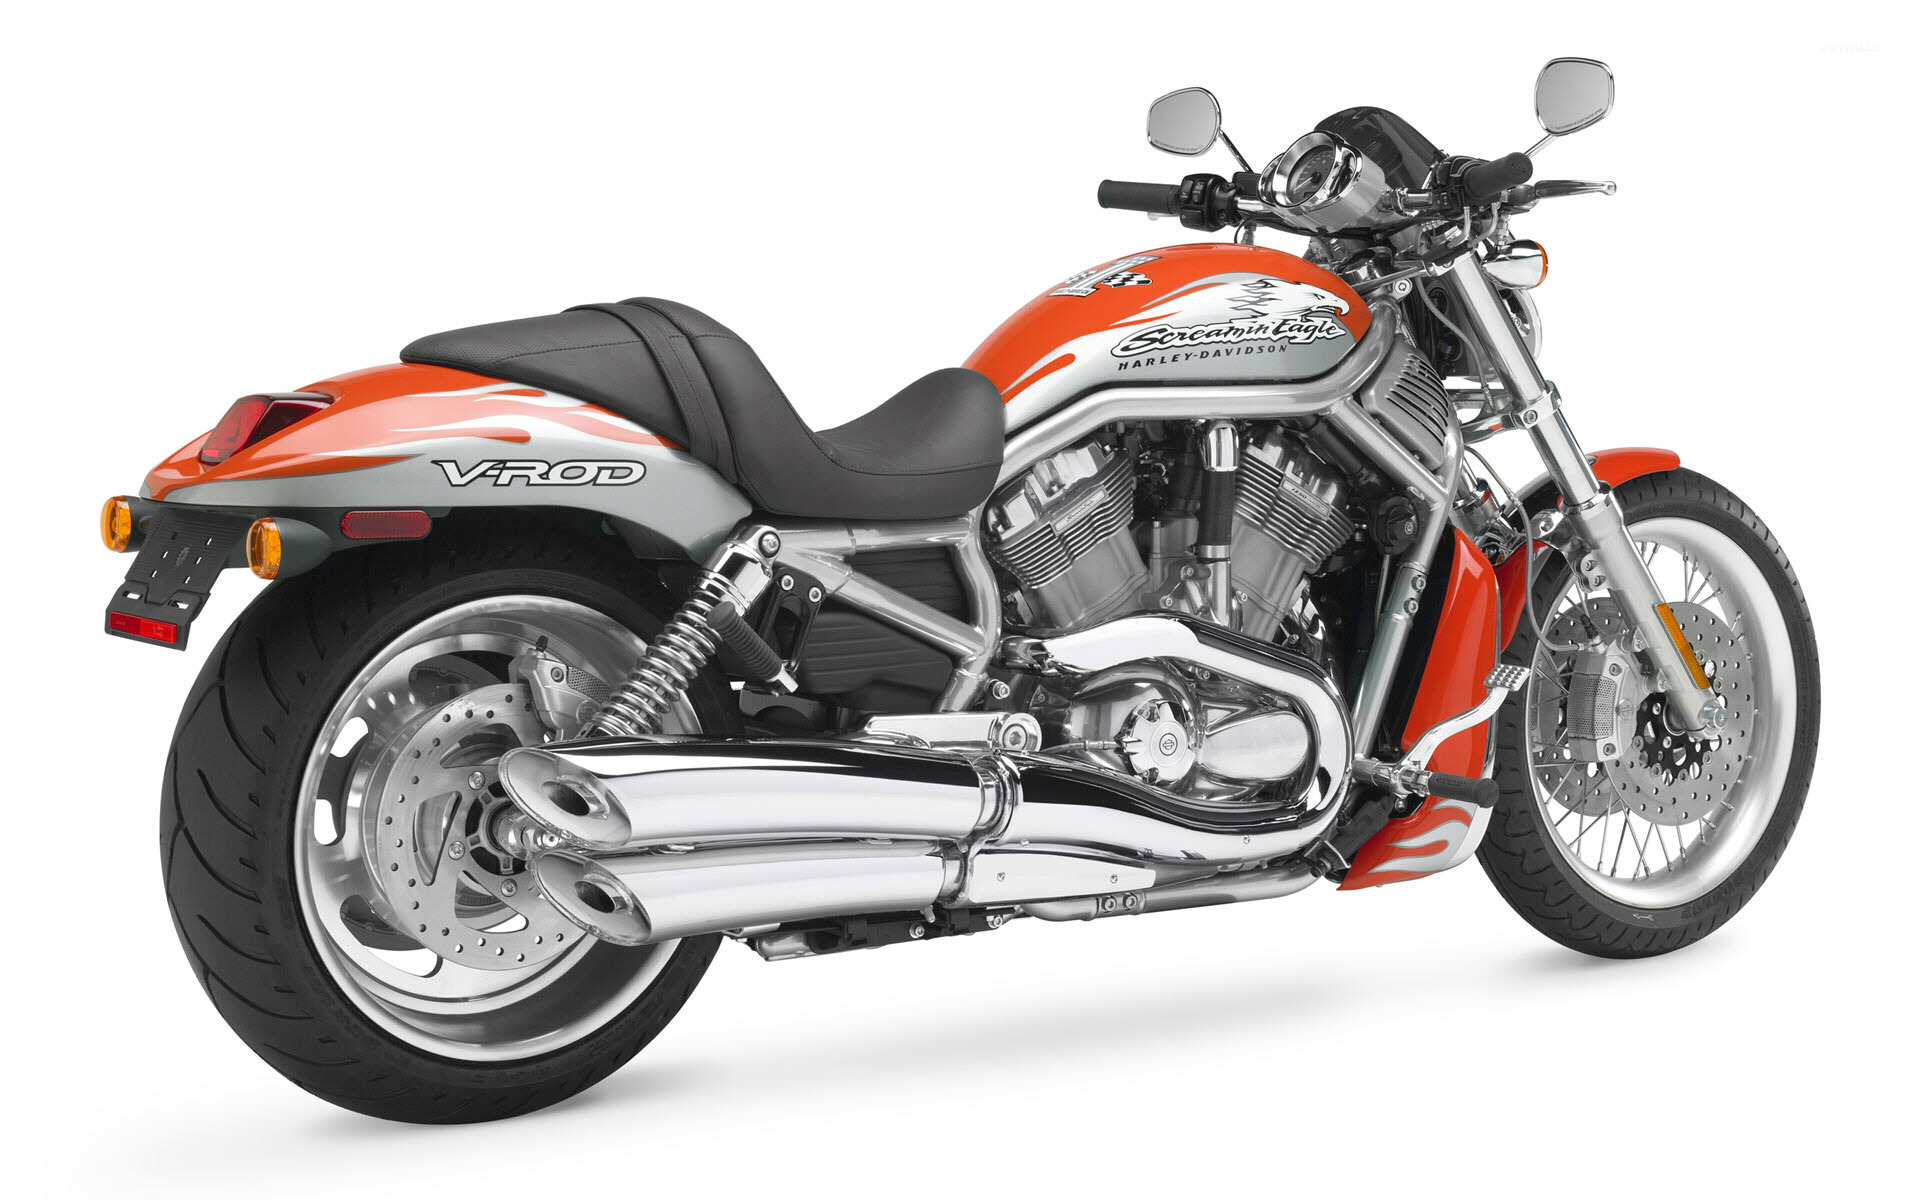 Harley Davidson Vrscf V Rod Muscle Wallpaper Motorcycle